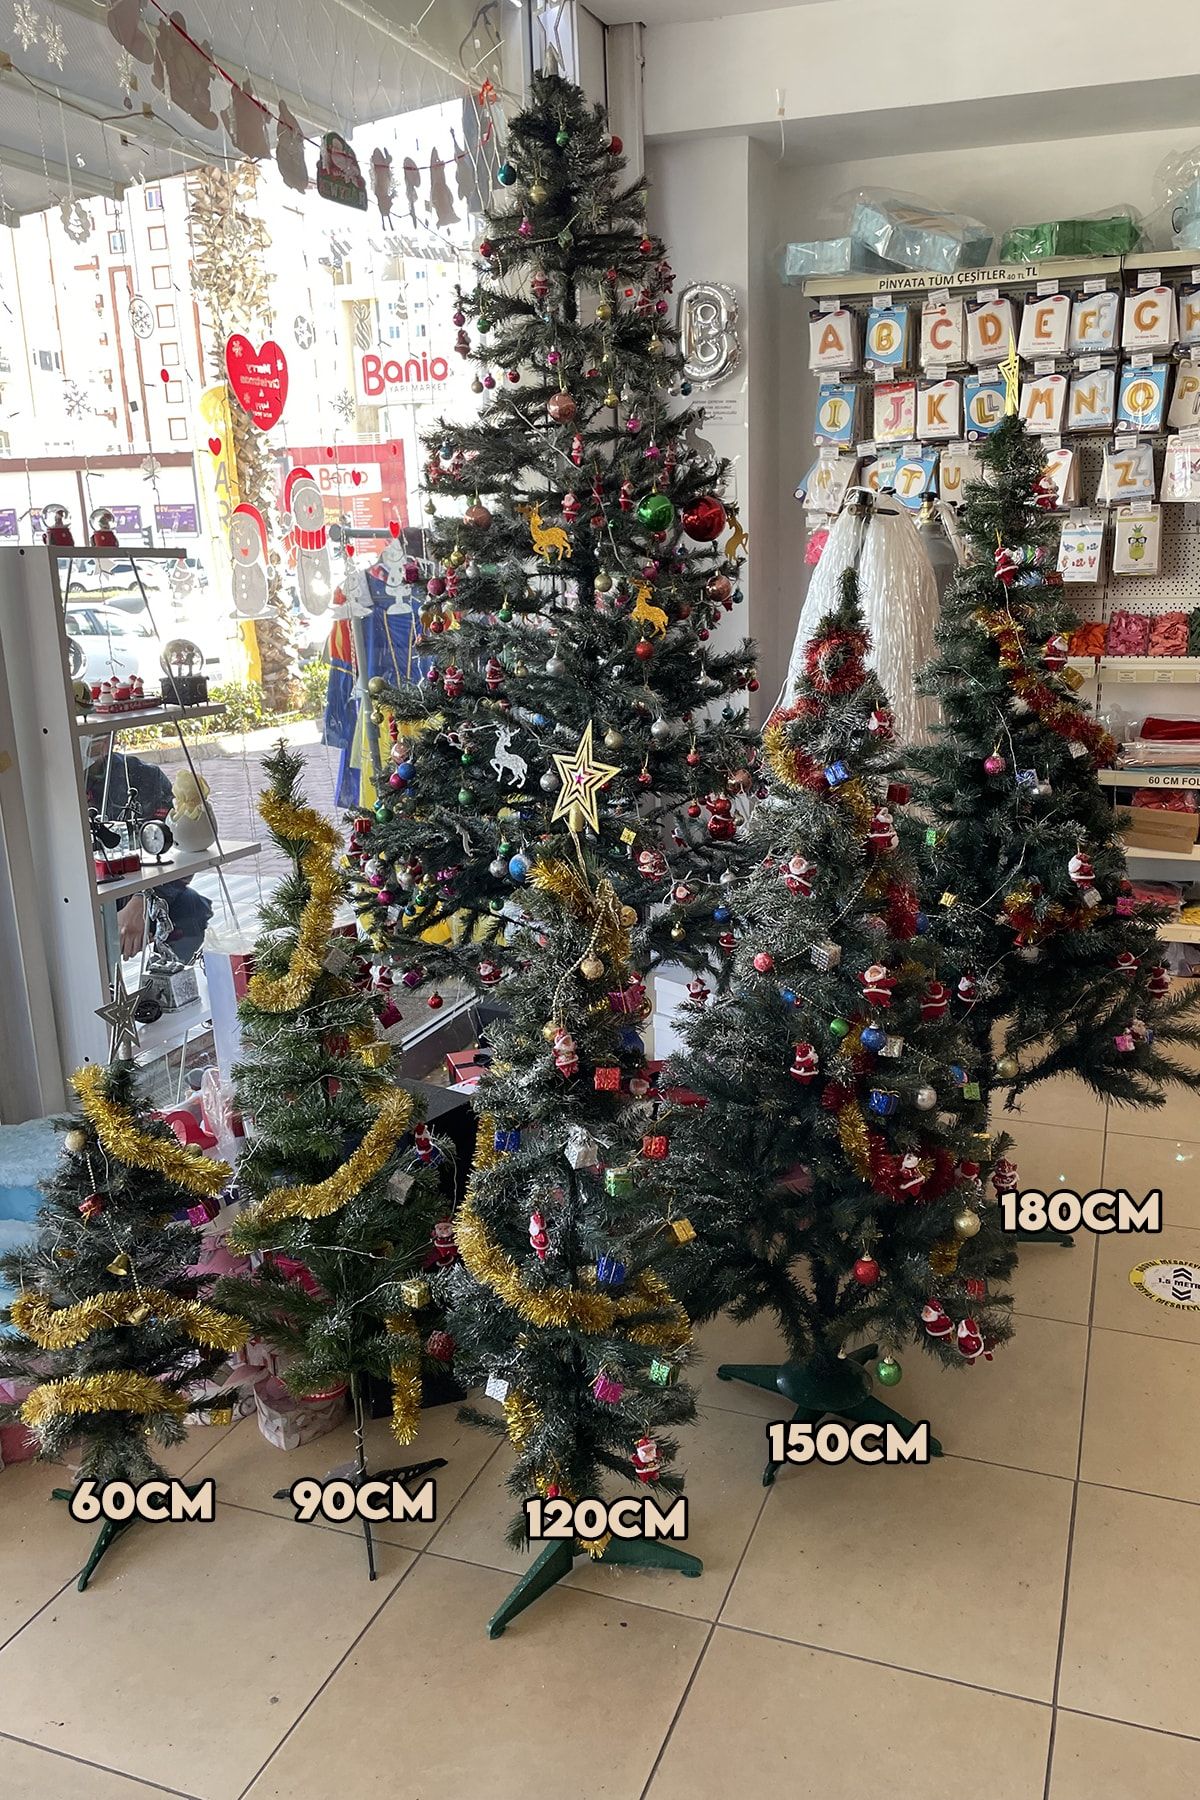 90 cm Yılbaşı Çam Ağaç Seti ve Yılbaşı Süsleri Paketi  Yılbaşı Işığı Kar Spreyi_3